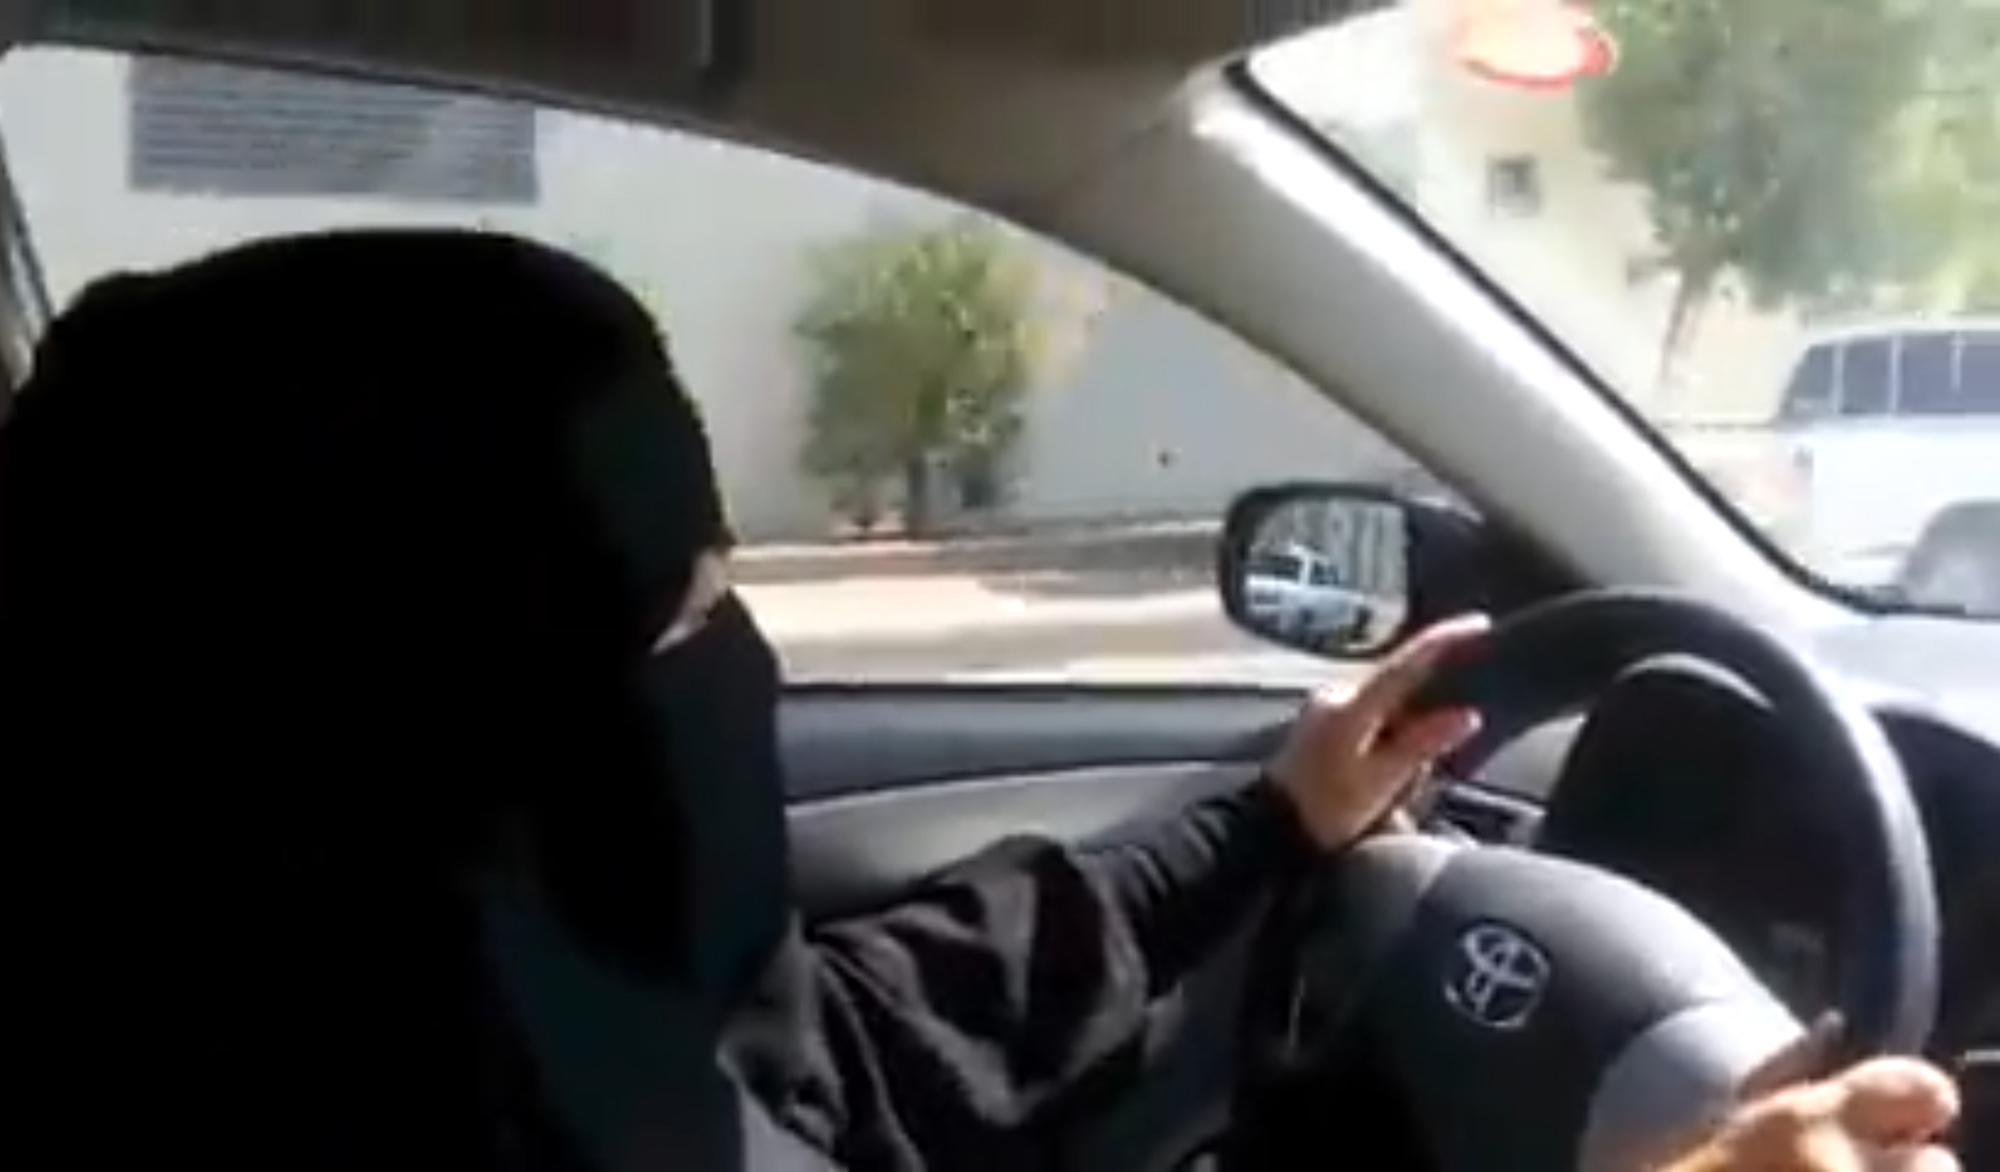 Most, hogy már vezethetnek a nők, a szaúdi hatóságoknak van idejük az ezért halállal fenyegetőzőkkel foglalkozni